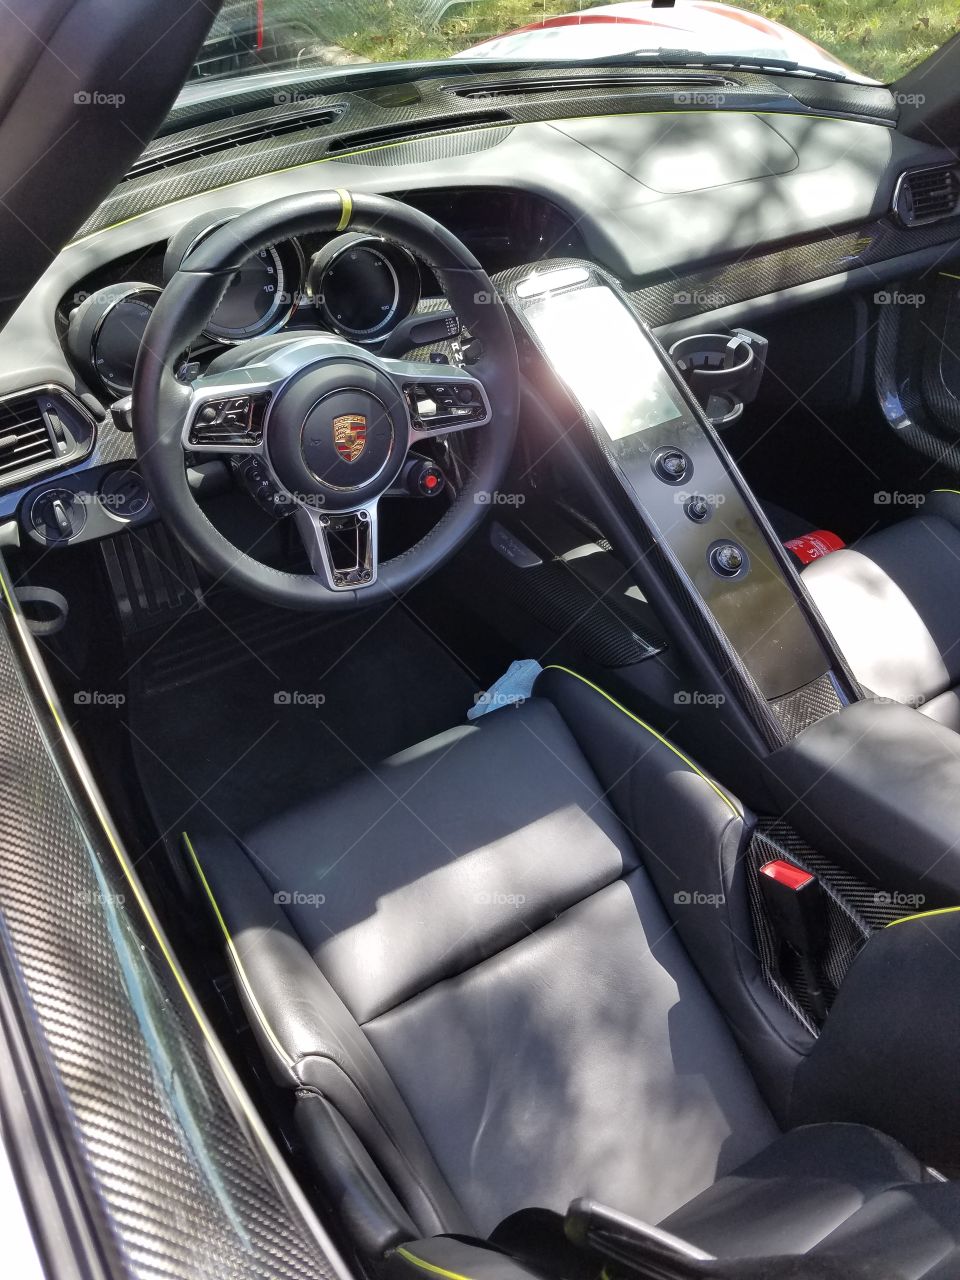 Porsche Spyder interior